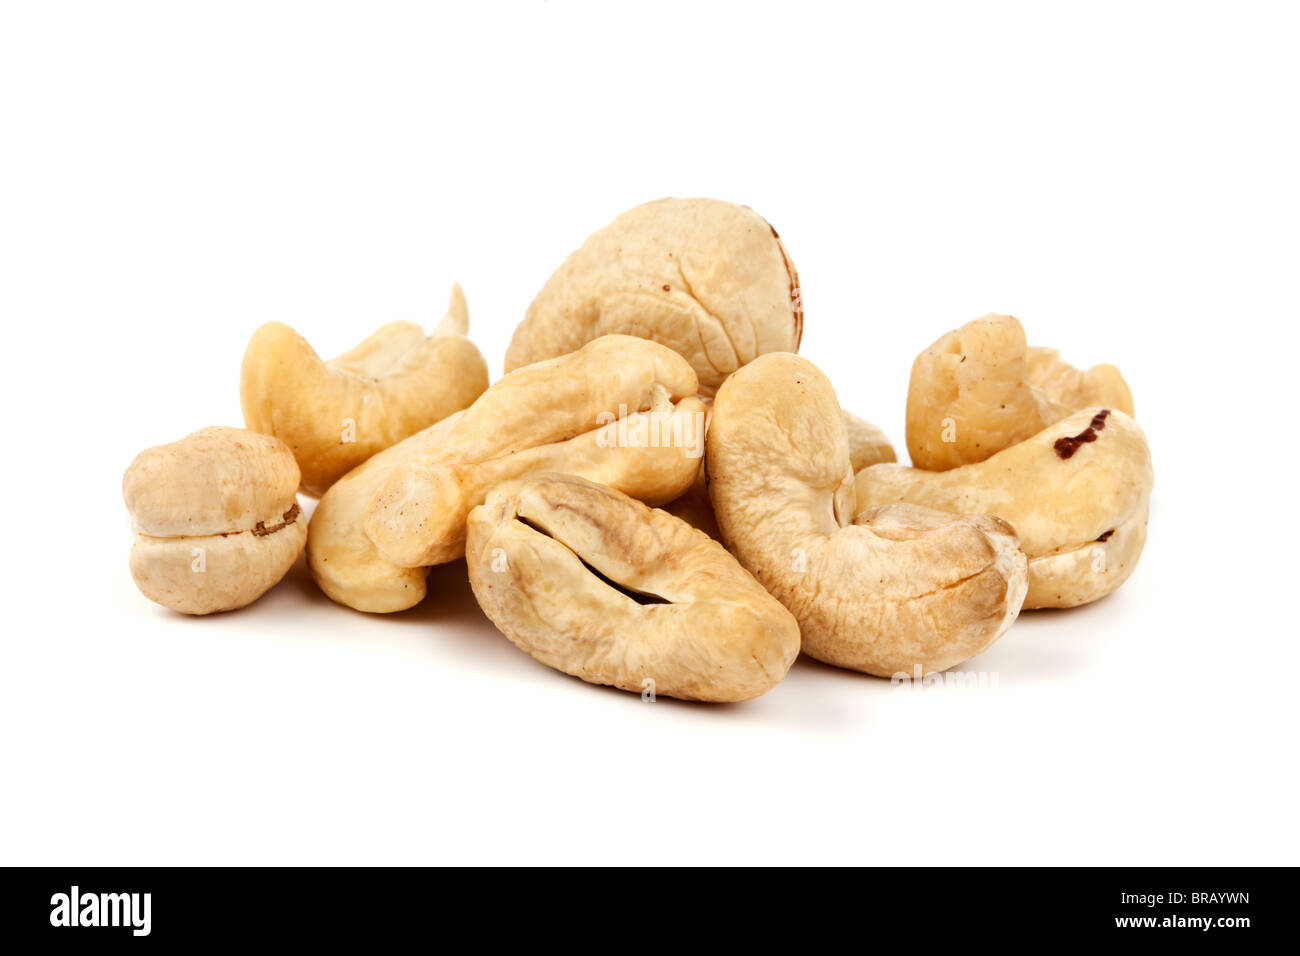 Häufchen von getrockneten Cashew-Nüssen auf weißem Hintergrund Stockfoto